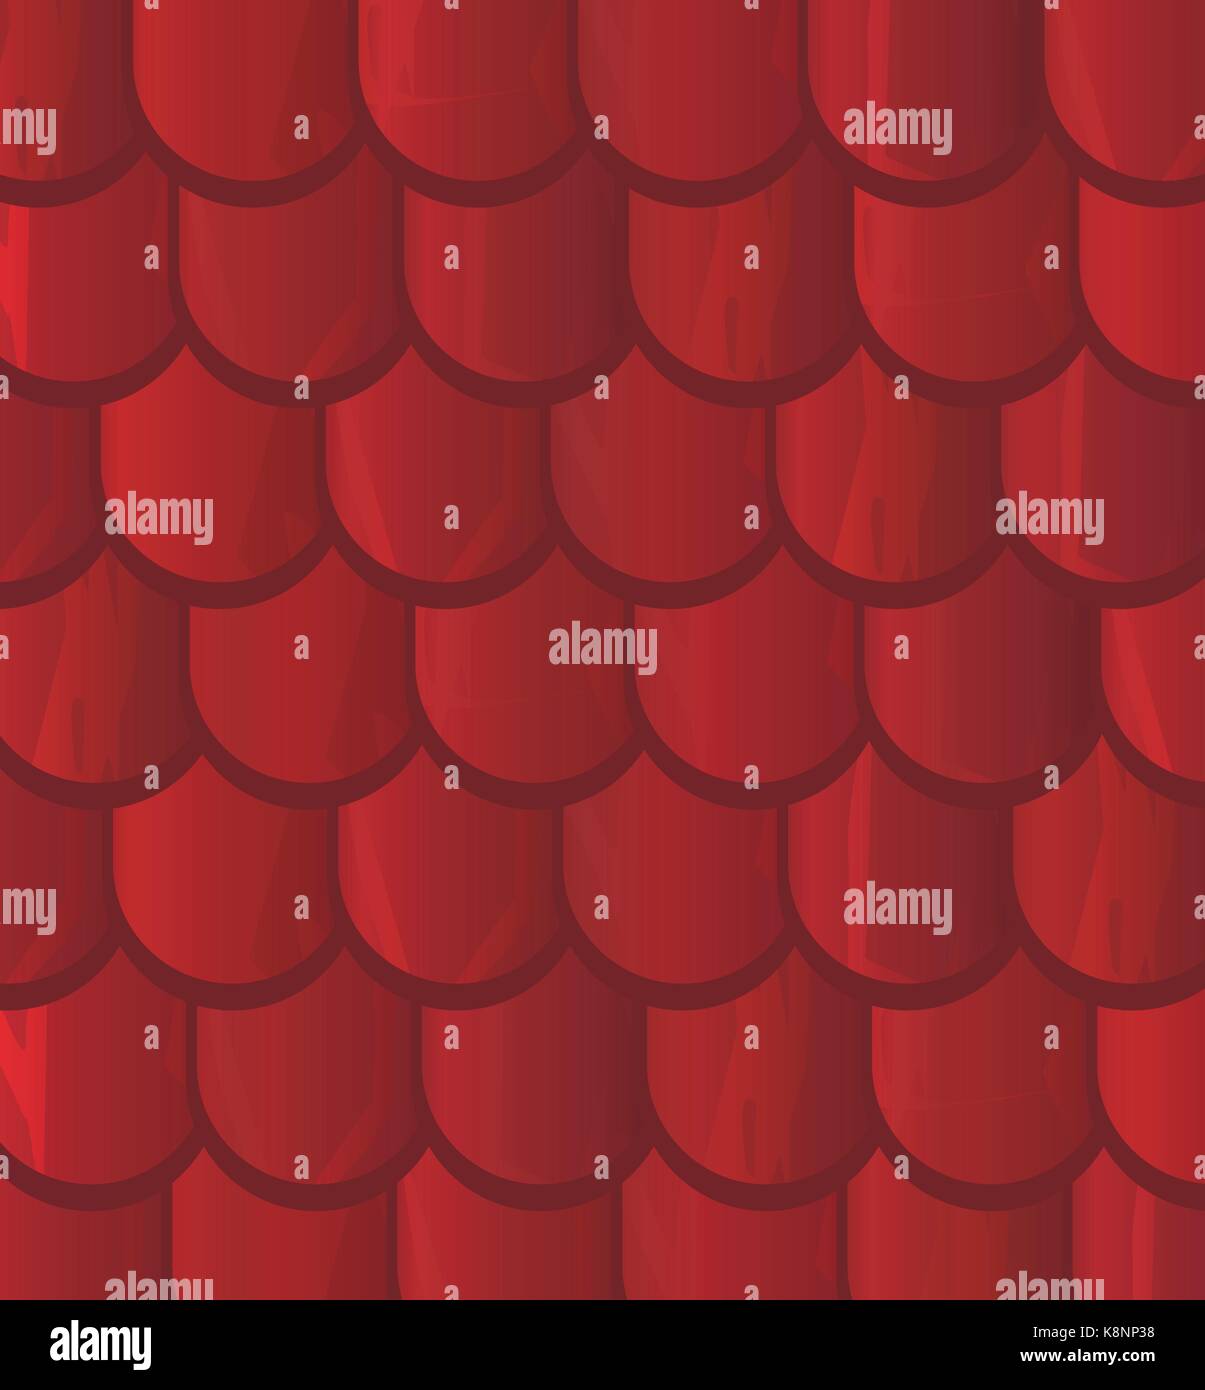 Texture vecteur illustration d'un toit de tuiles rouges, de l'ardoise. Illustration de Vecteur